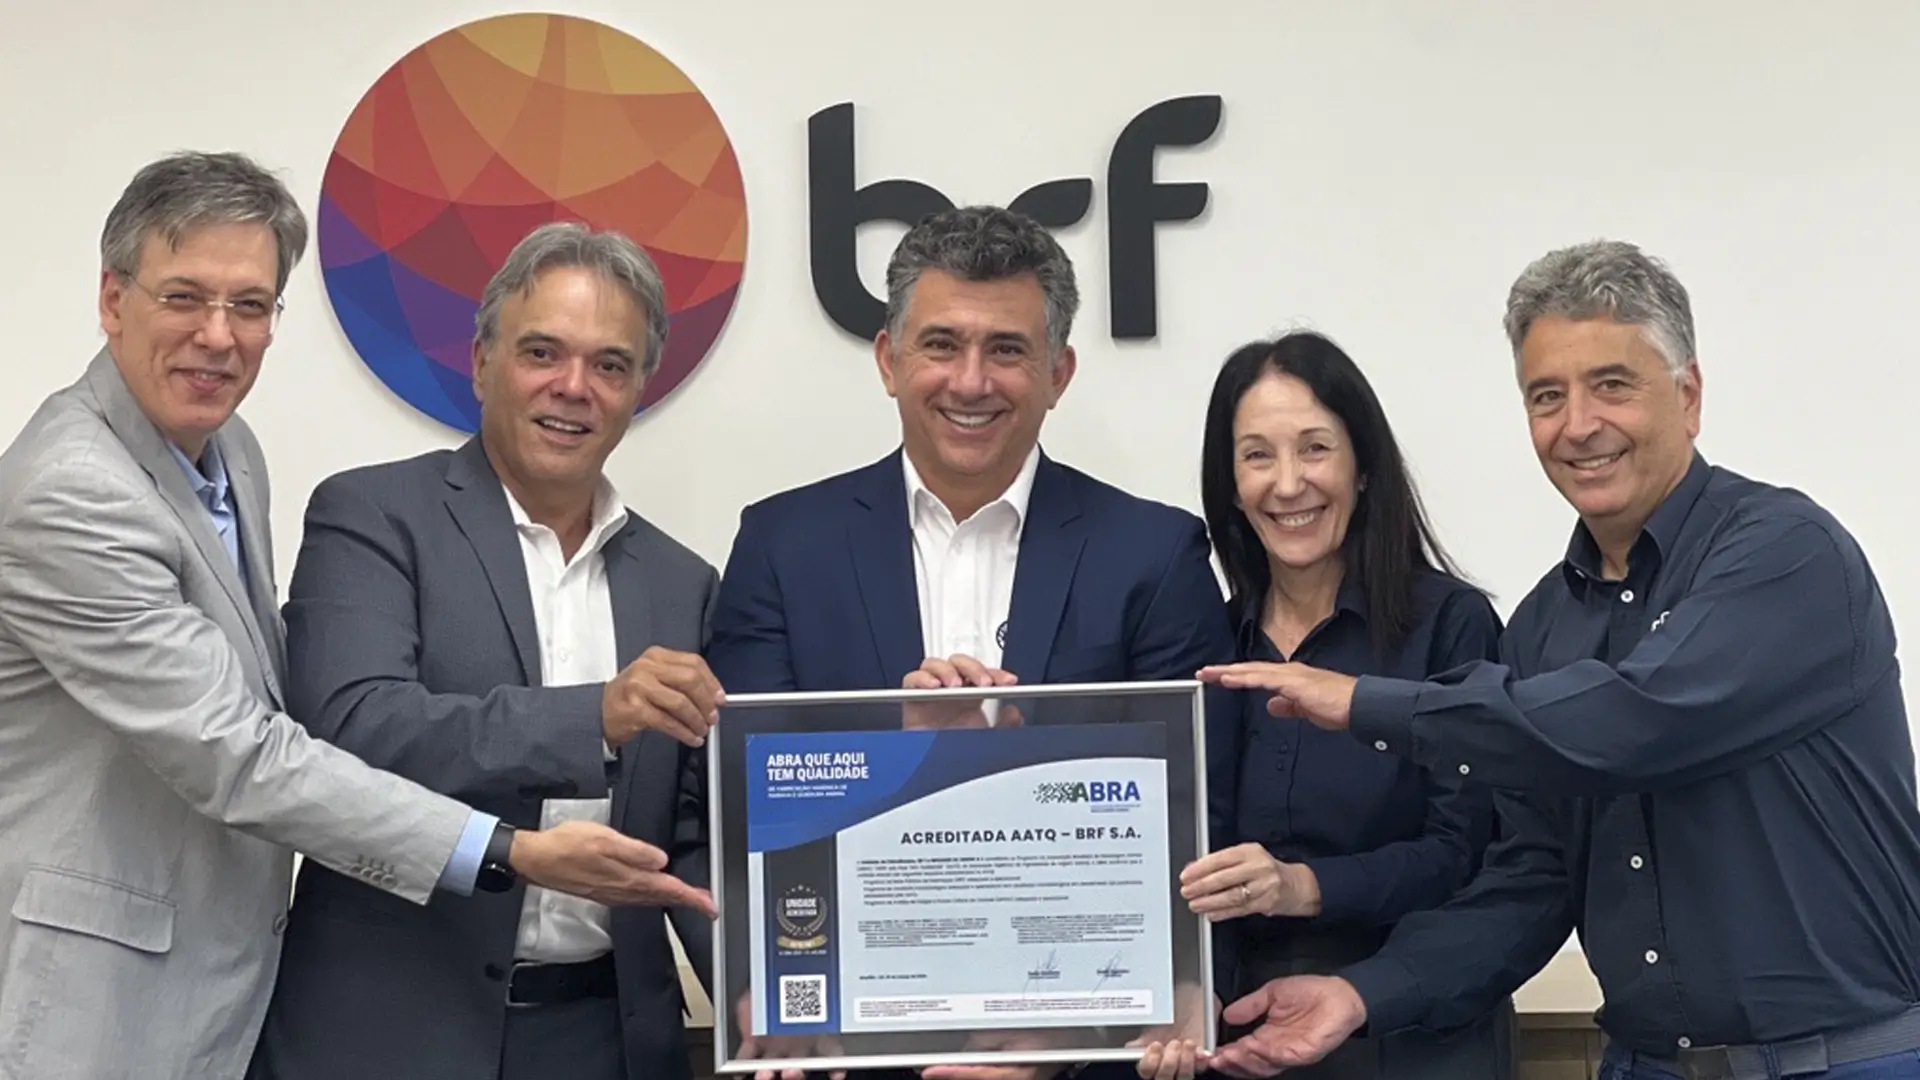 ACREDITAÇÃO ABRA que Aqui tem Qualidade: Fábrica de Hidrolisados da BRF Ingredients é a primeira no Brasil a receber a certificação